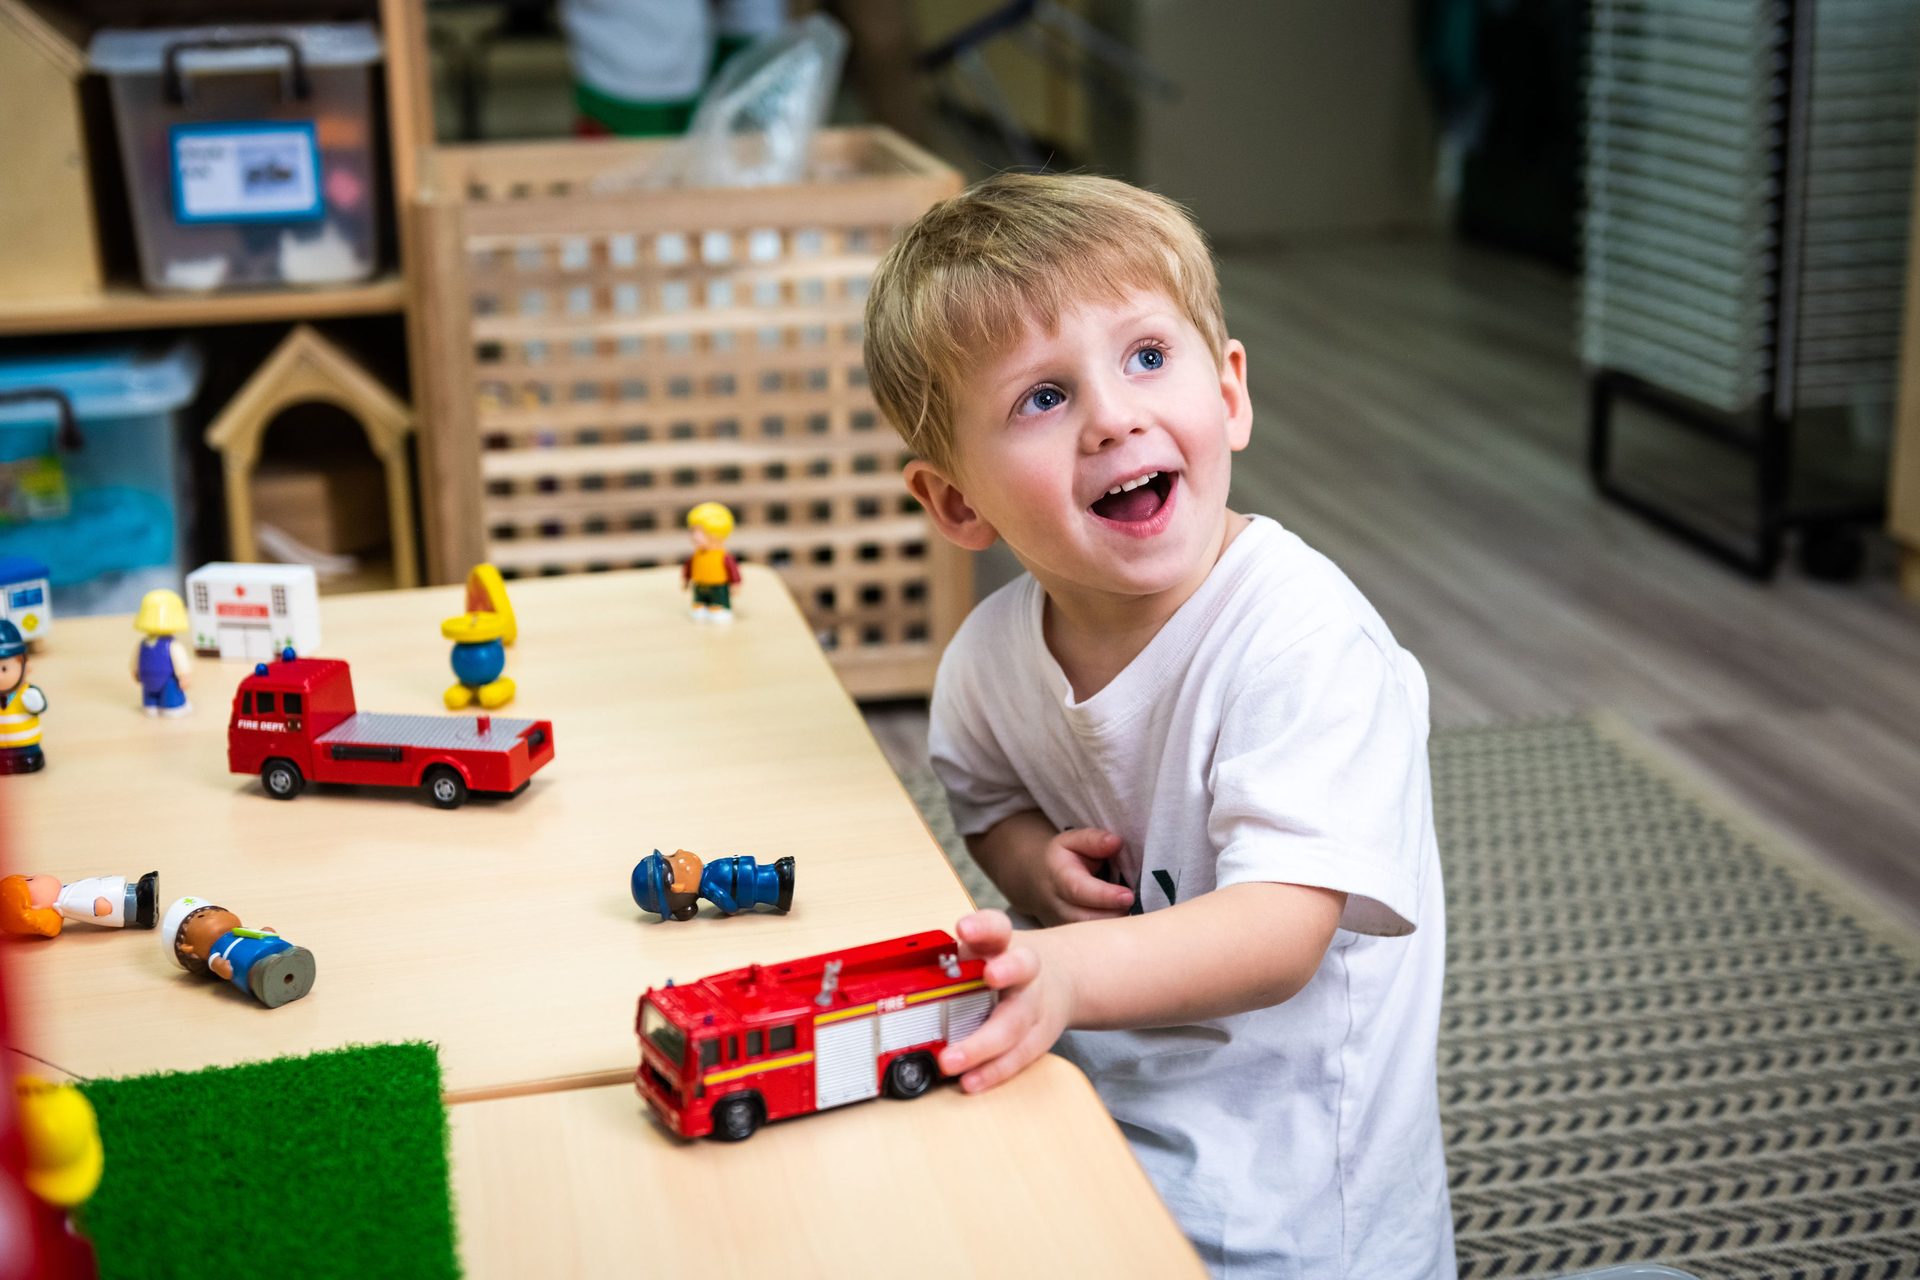 Toy block, Smile, Wheel, Vehicle, Fun, Lego, Wood, Toddler